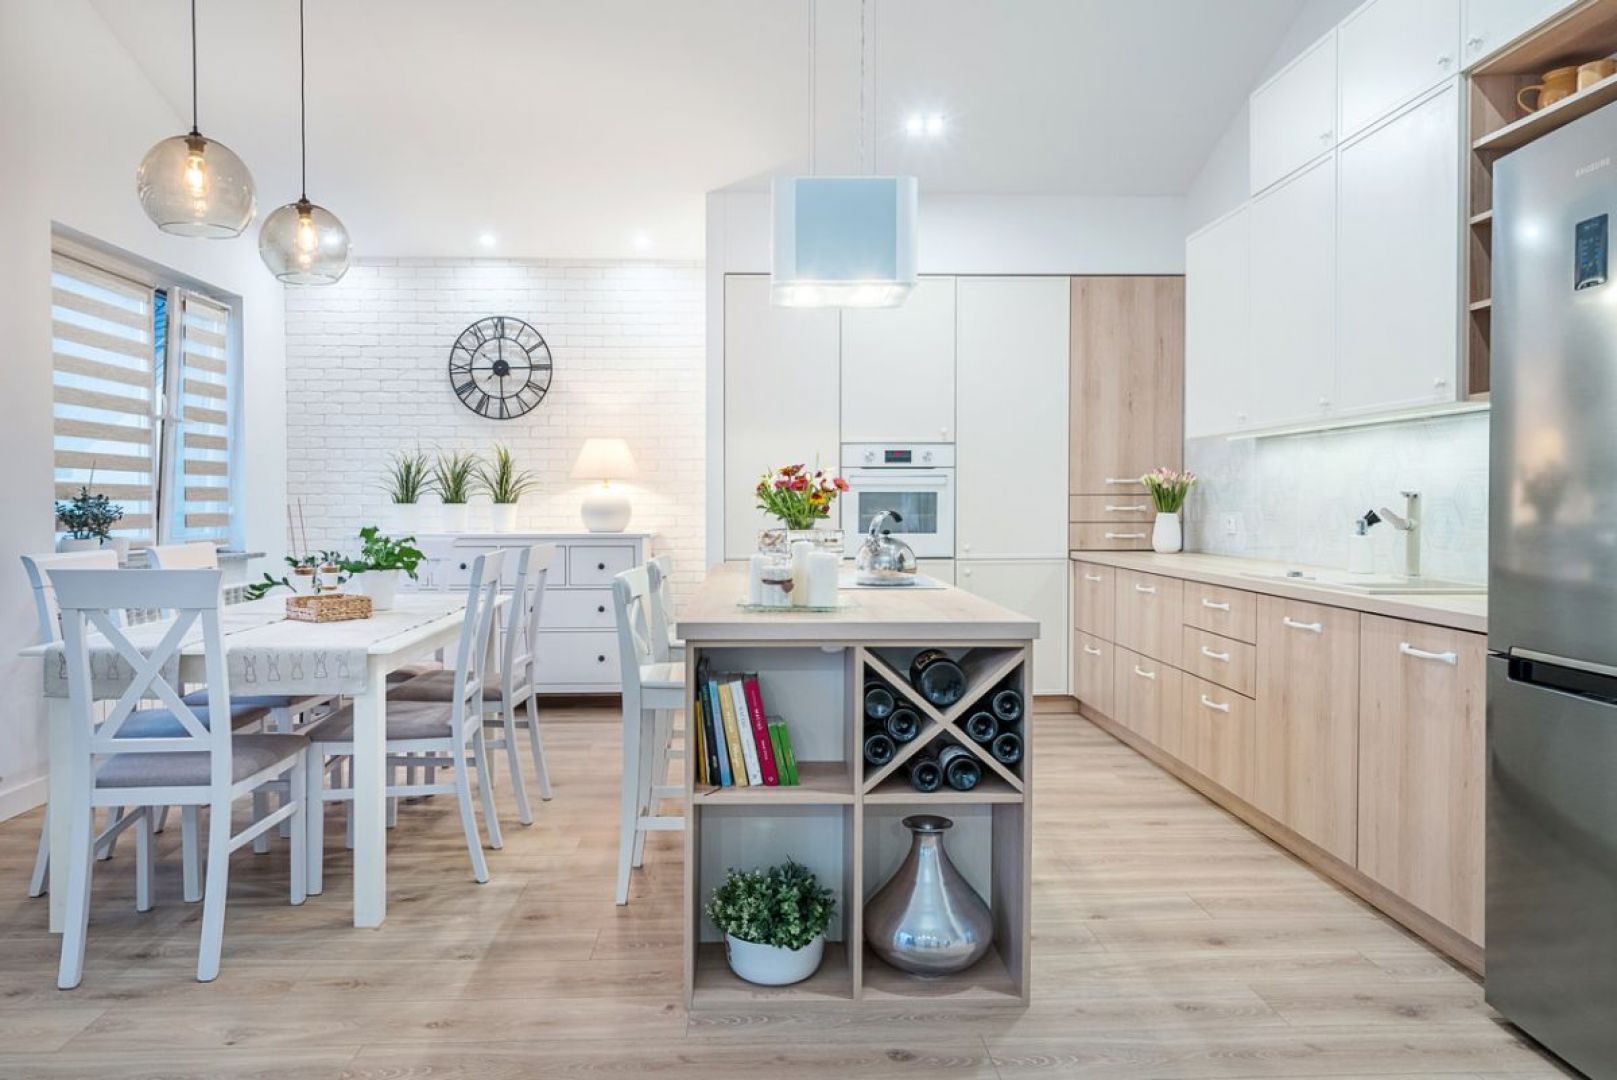 Nowoczesne białe fronty i dekor drewniany - udane połączenie w kuchni. Fot. Studio Camidecor/ Max Kuchnie